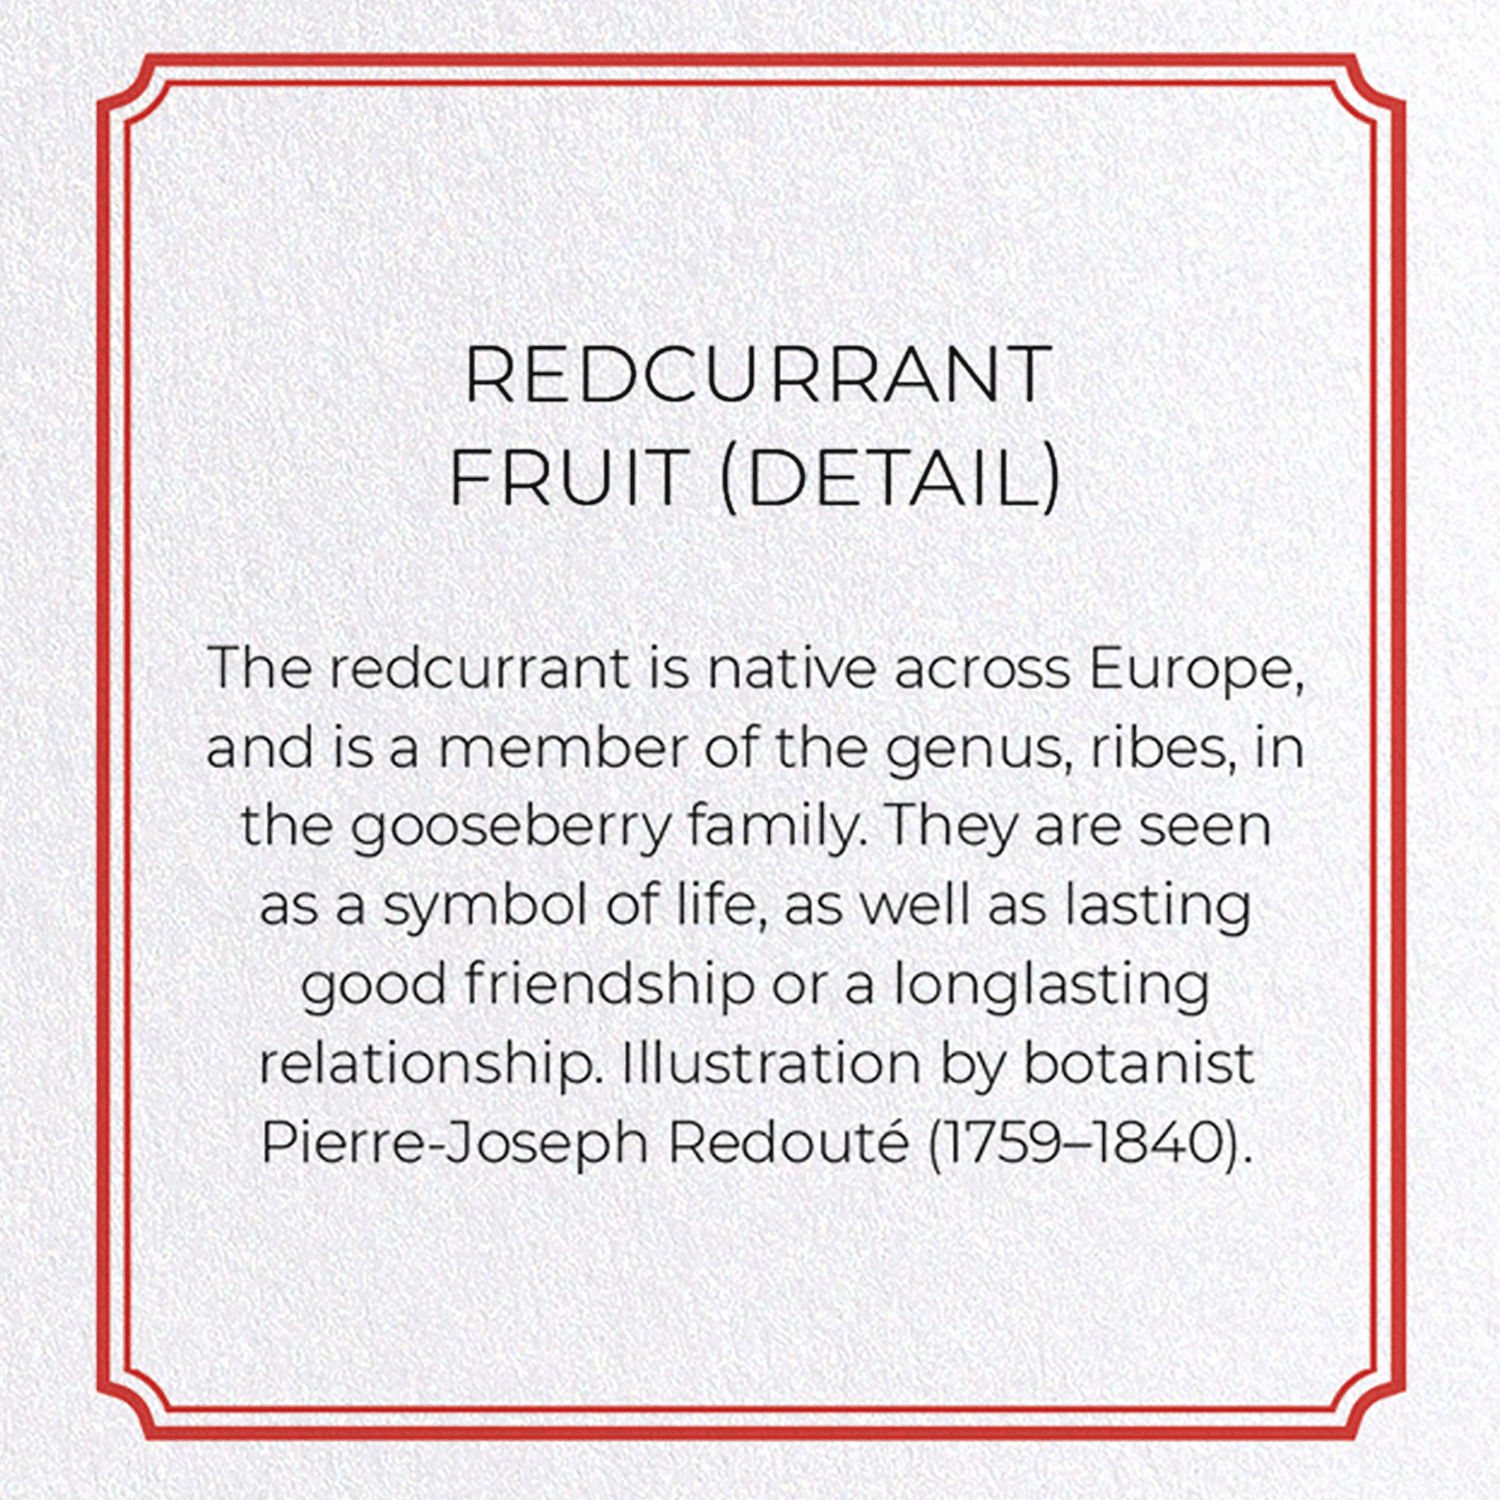 REDCURRANT FRUIT